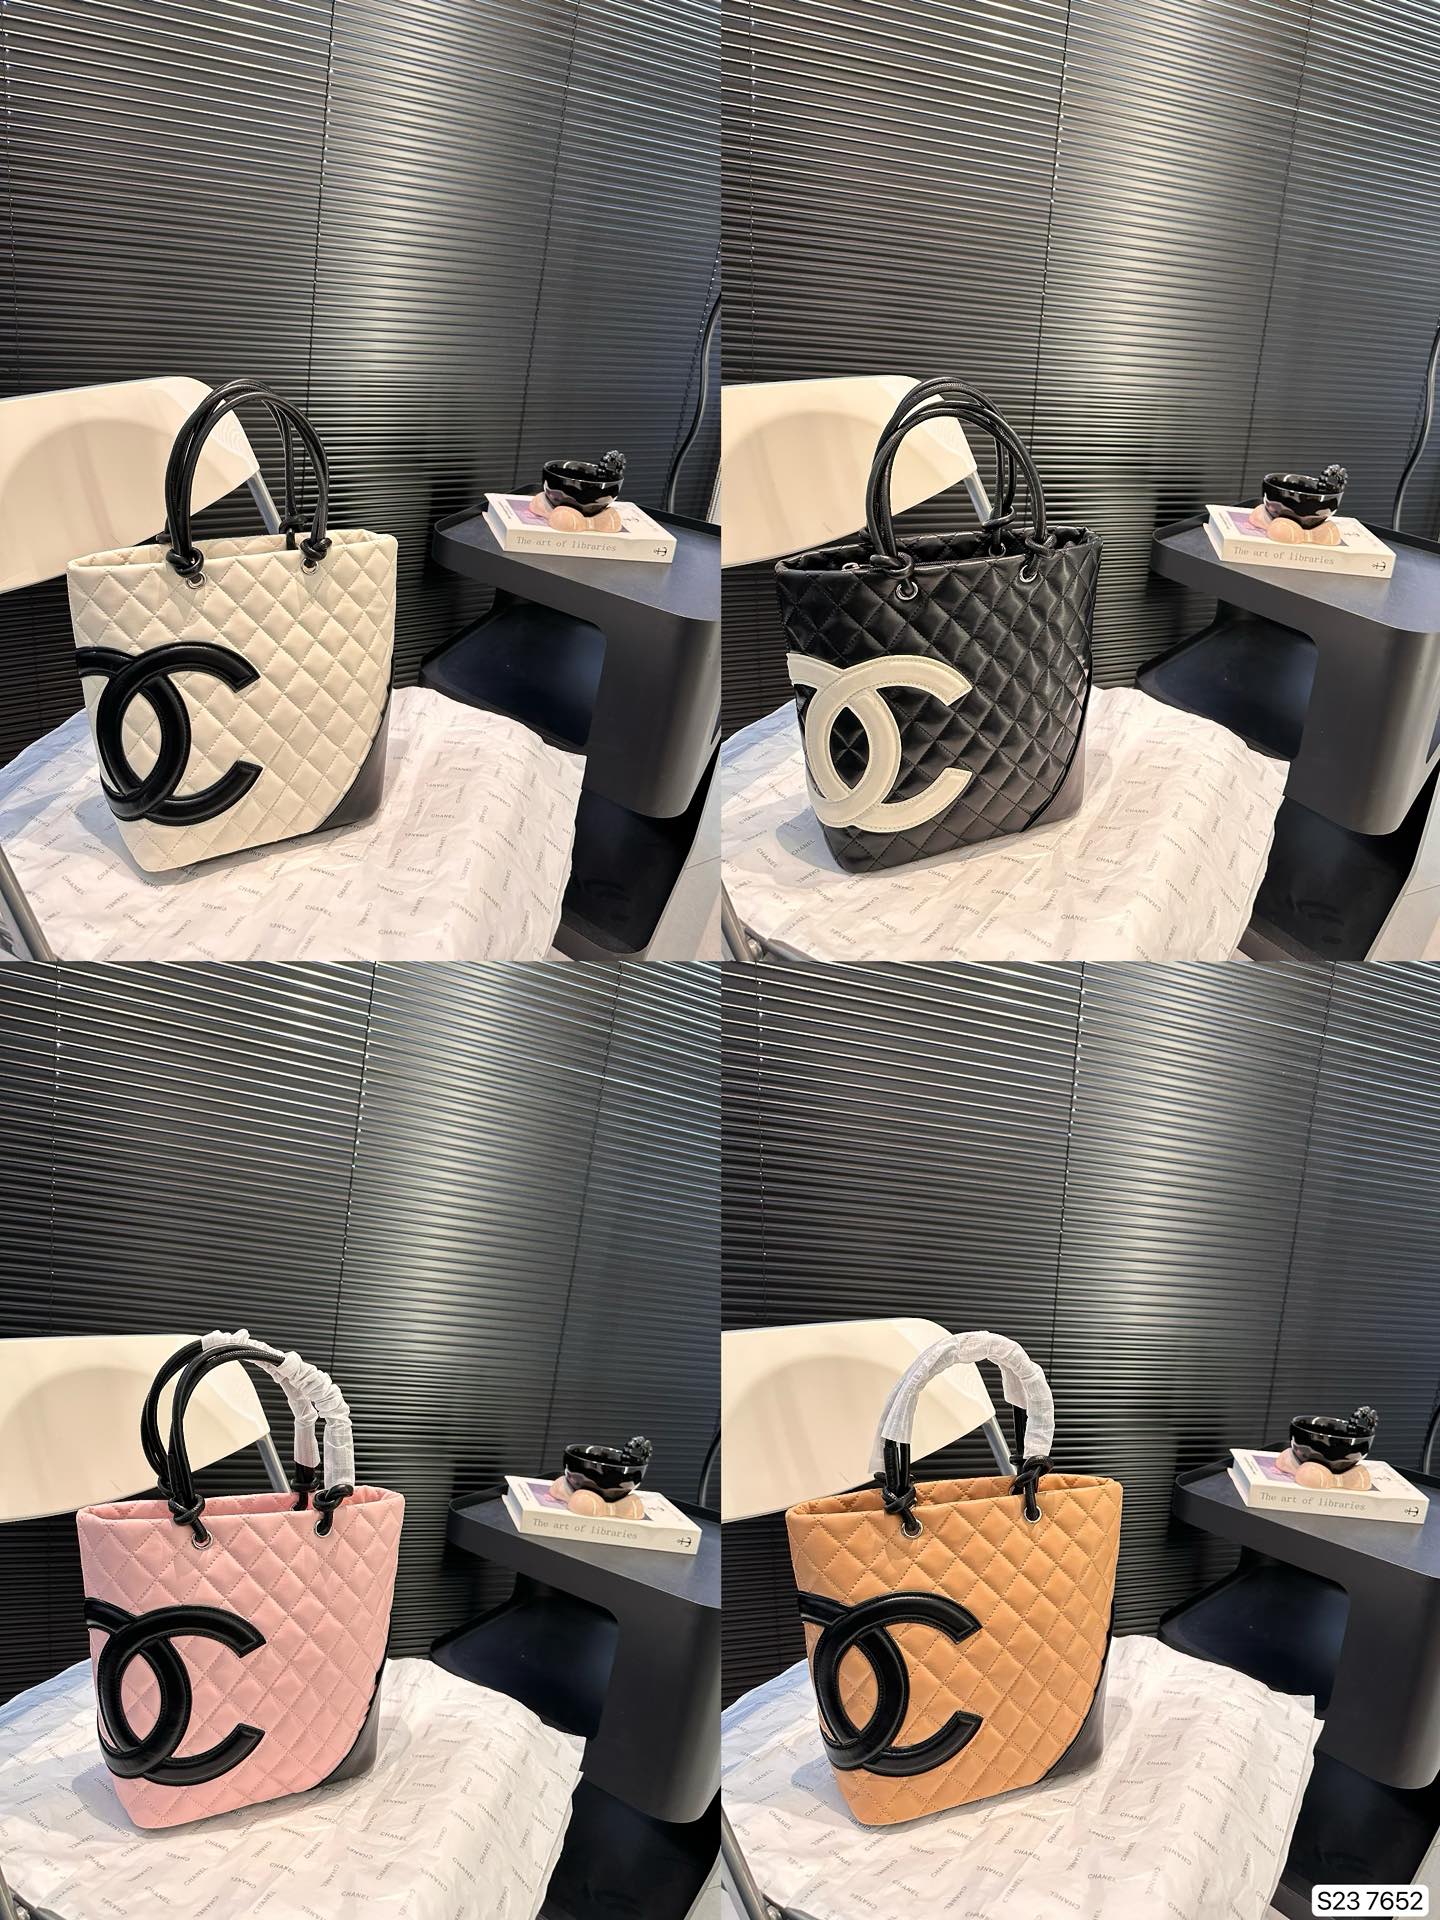 Chanel Taschen Tragetaschen